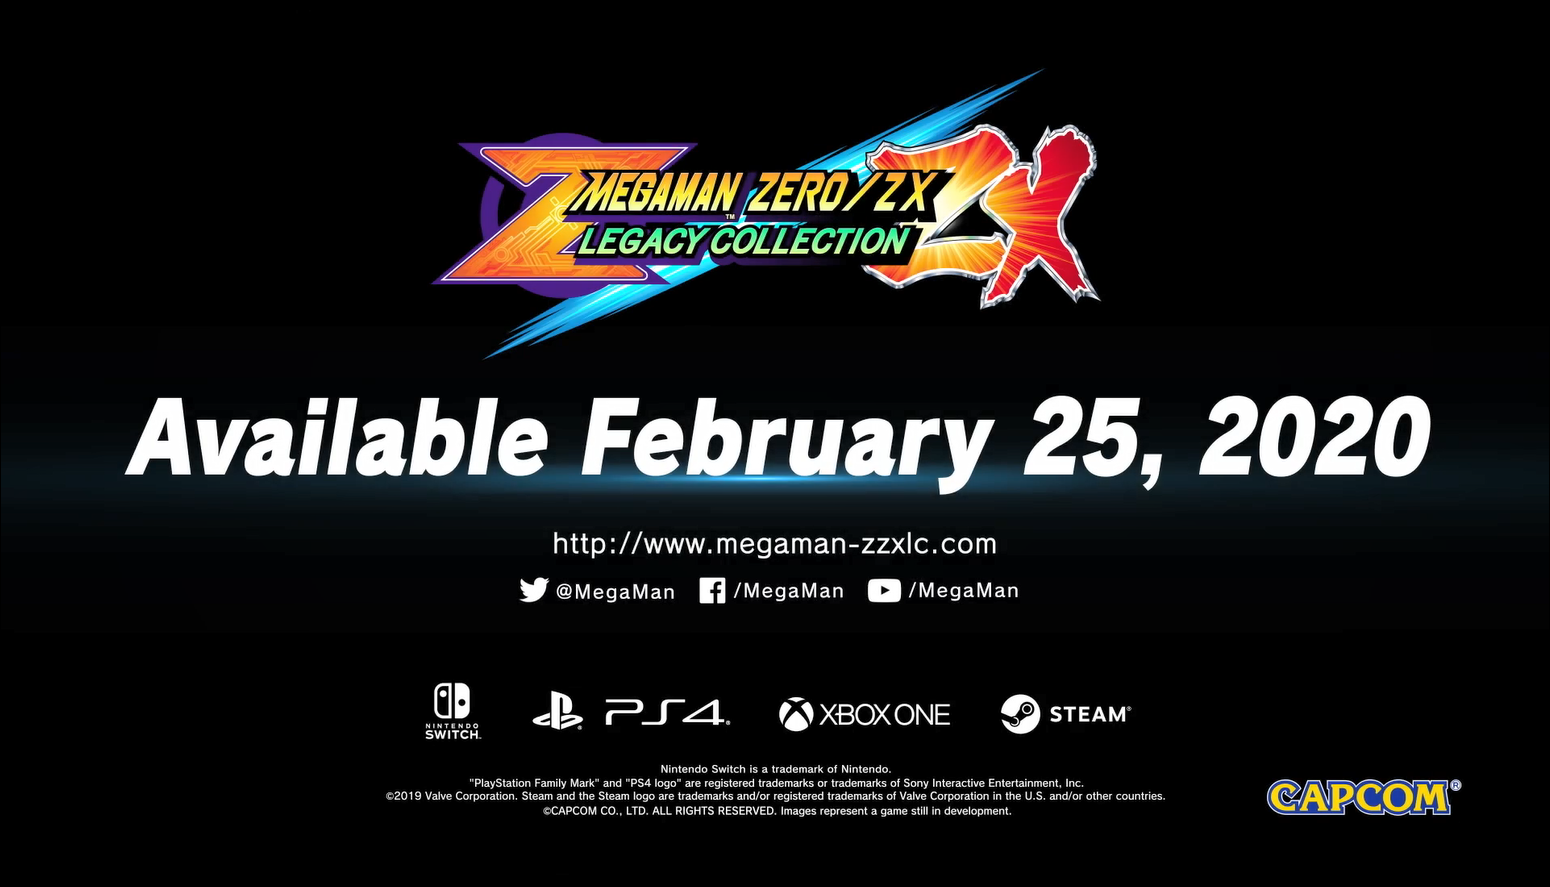 《洛克人Zero/ZX遗产合集》预告公布发售日 英雄再度睁眼